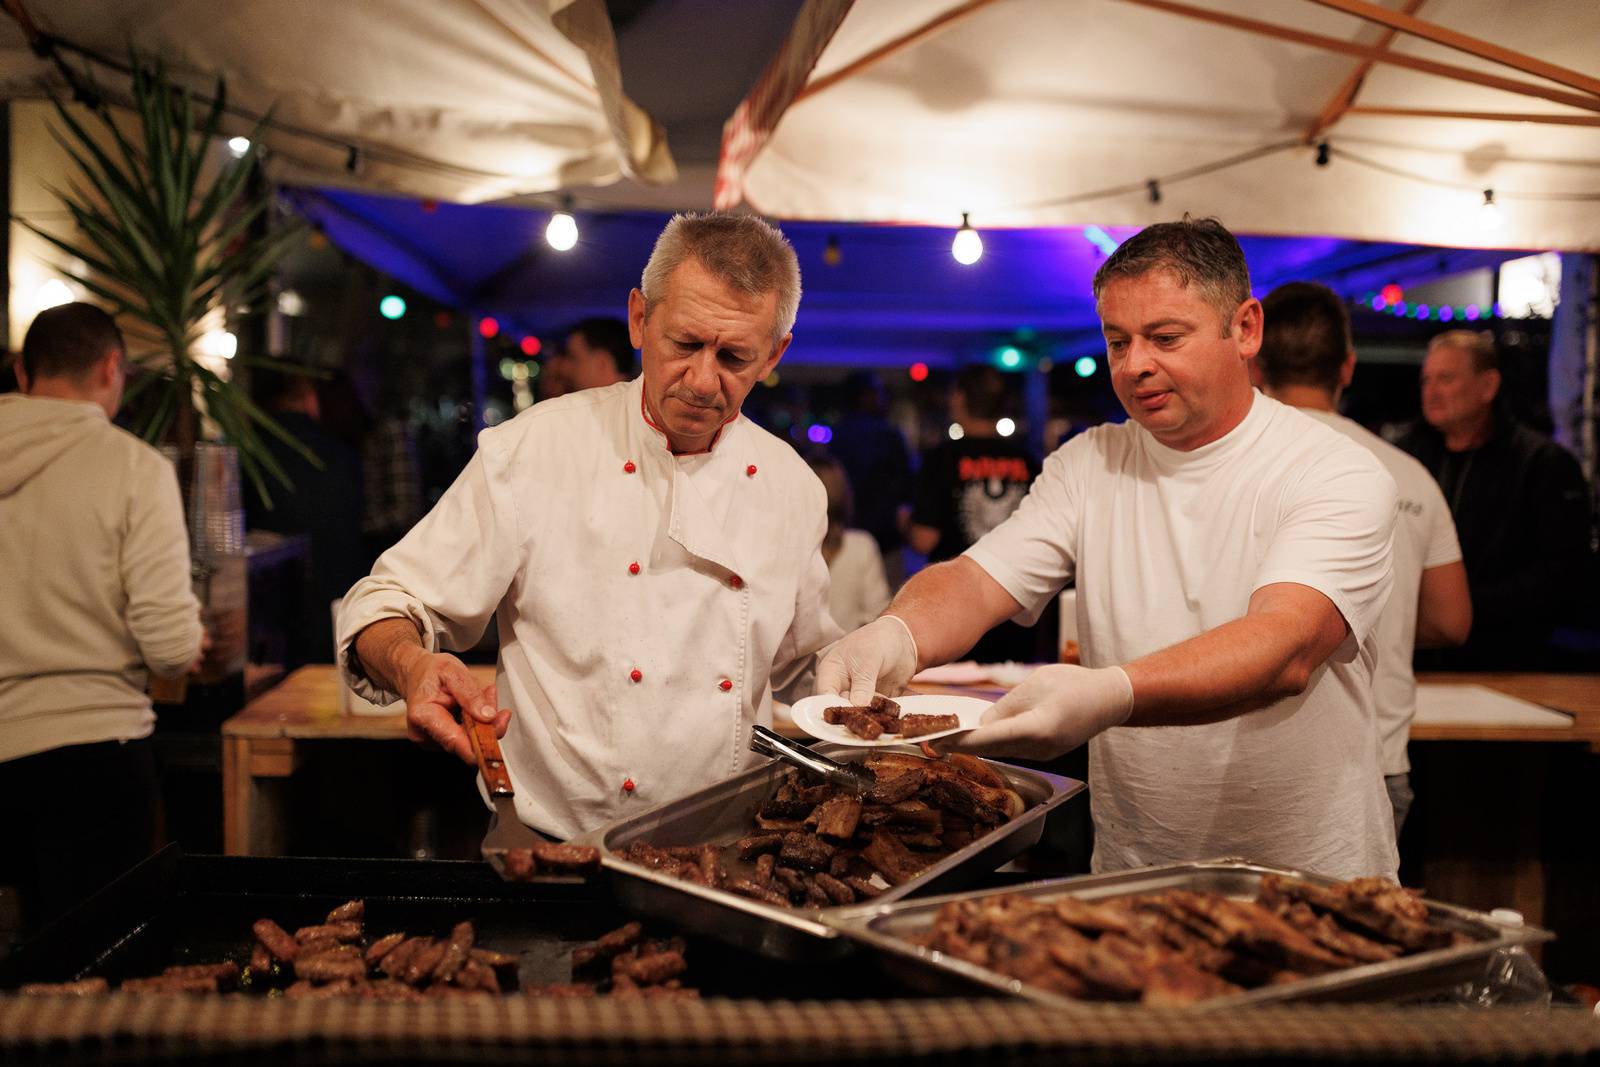 Zadarski Festival Mesa Meat Me 3.0: Četiri dana mesnih delicija i dobre zabave